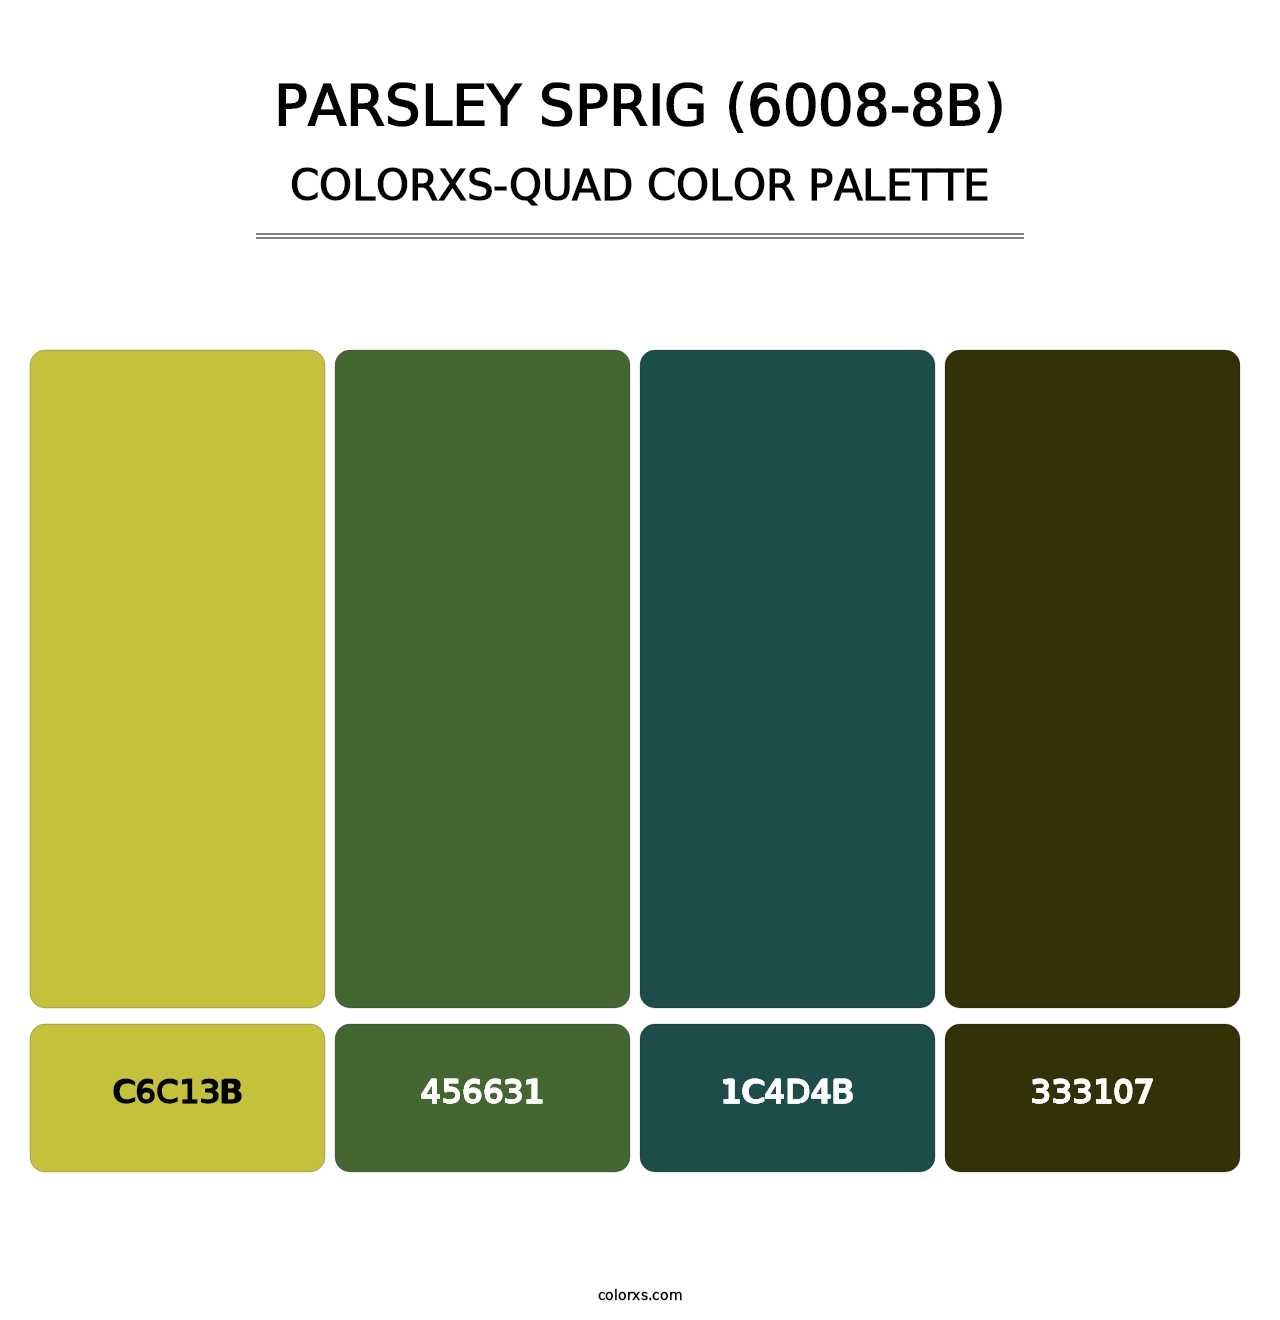 Parsley Sprig (6008-8B) - Colorxs Quad Palette